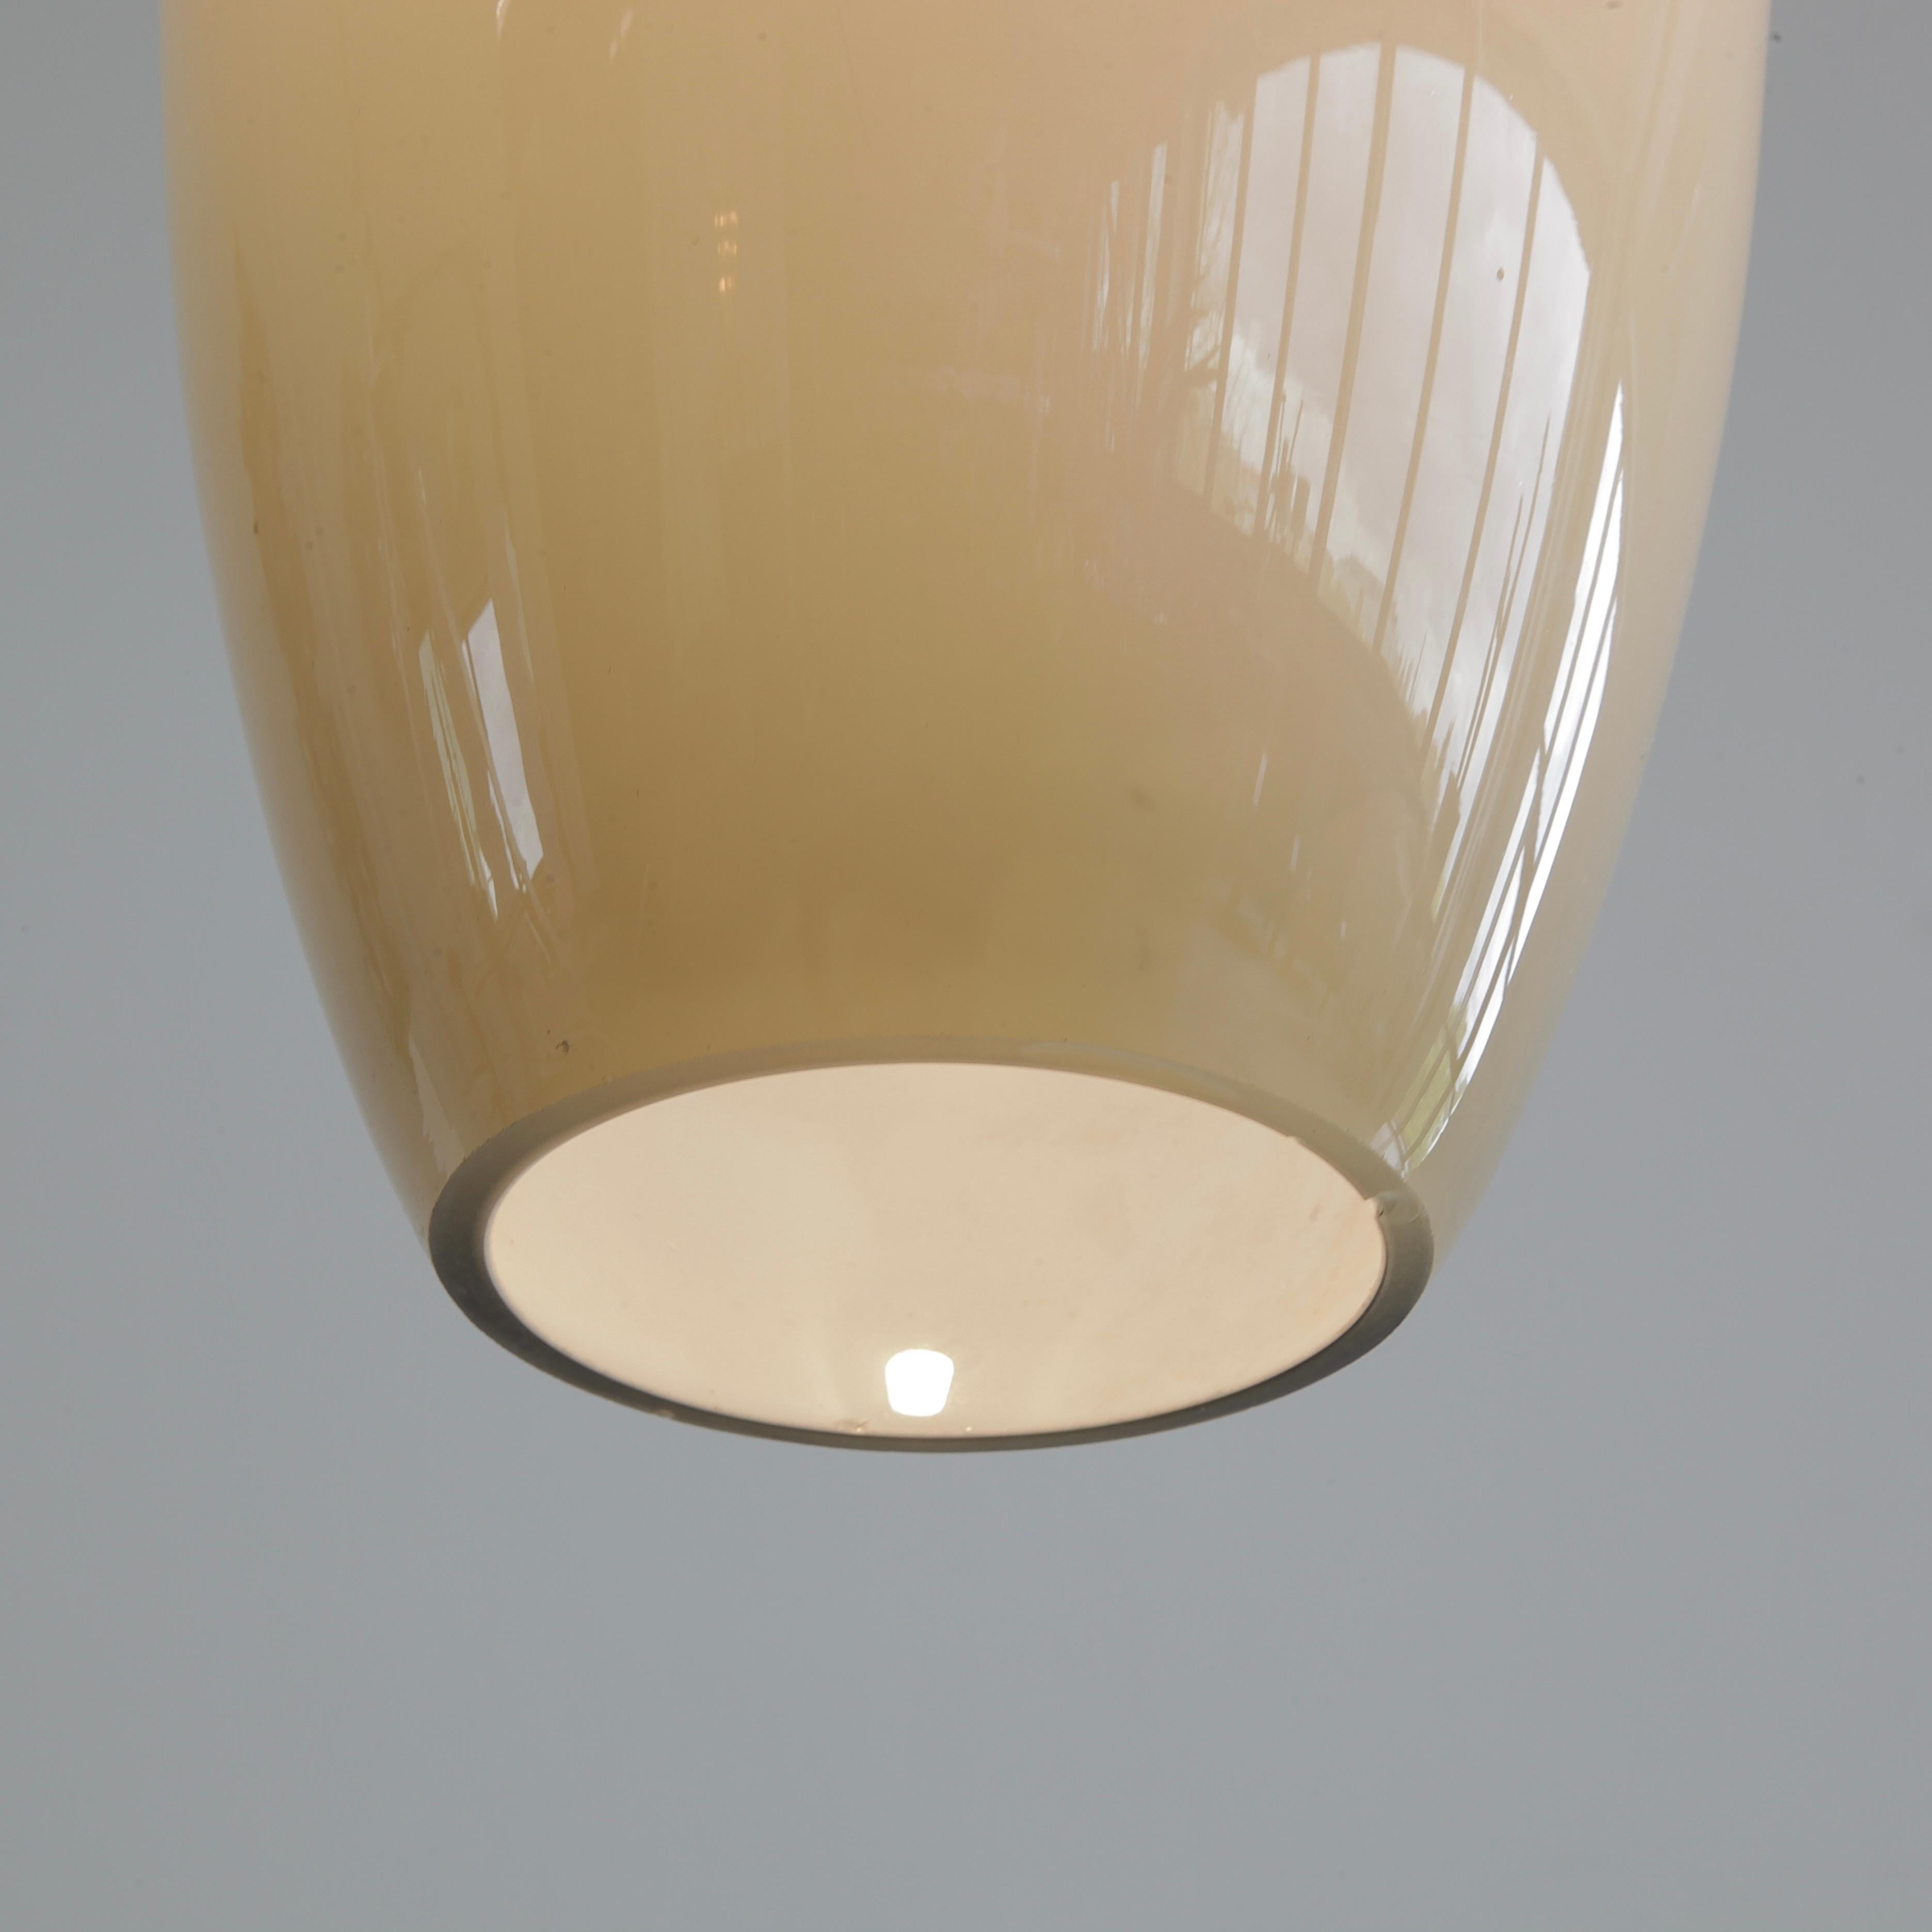 Glasröhrenanhänger von Alessandro Pianon. Italien, Vistosi, 1960er Jahre.

Wunderschön geformter Glasanhänger, mundgeblasen auf Murano und hergestellt von Vistosi. Das Glas ist in einem warmen Grauton gehalten und innen weiß ausgekleidet. Eine